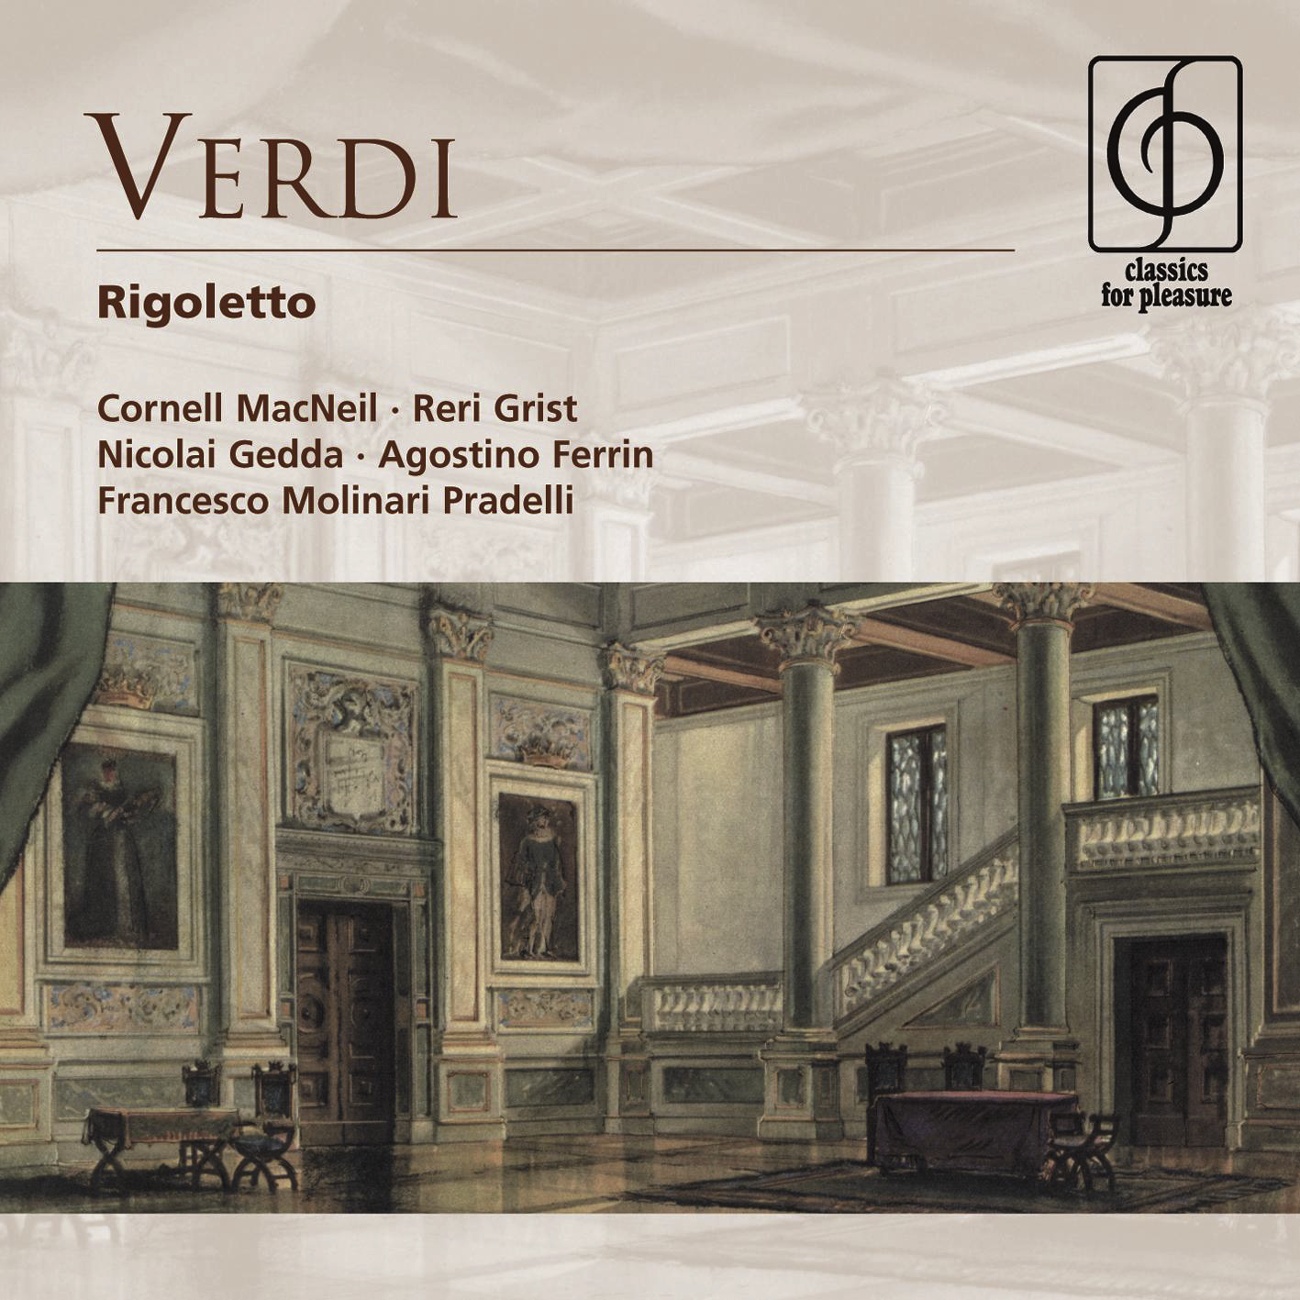 Rigoletto [Acts II & III]: Della vendetta alfin giunge l'istante! (Rigoletto, Sparafucile)